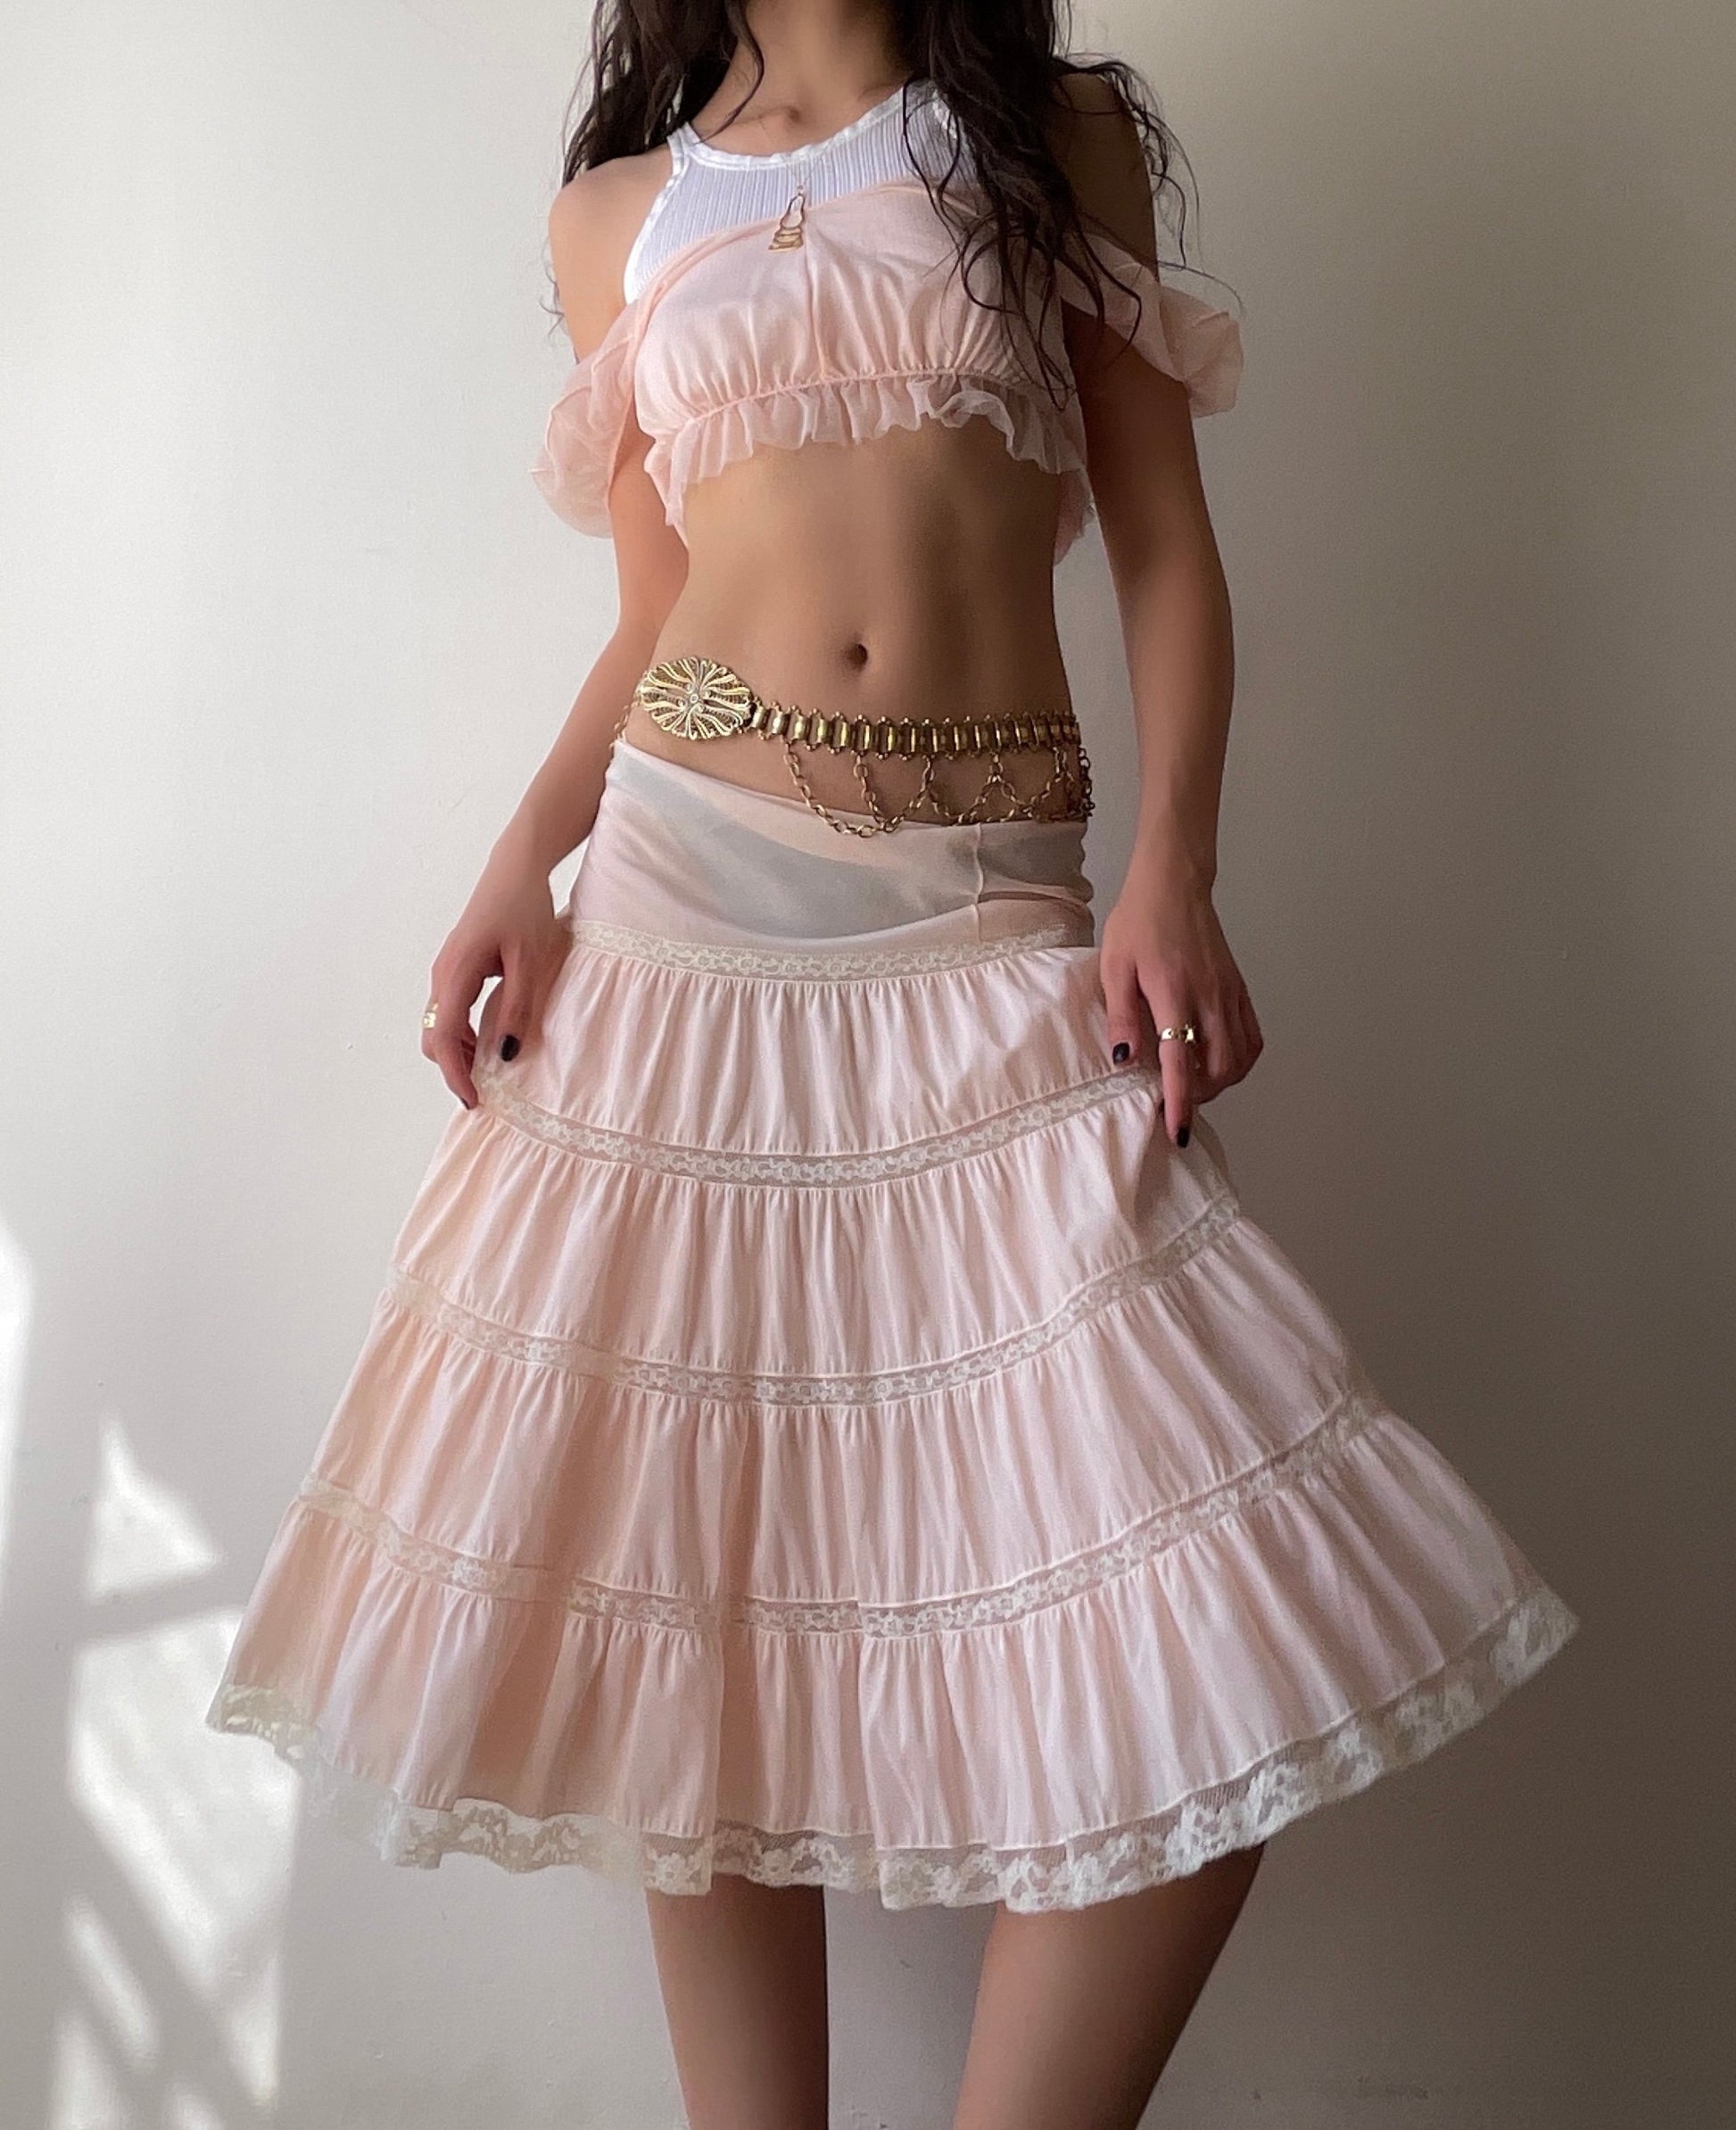 Strawberry Cream Skirt (33")